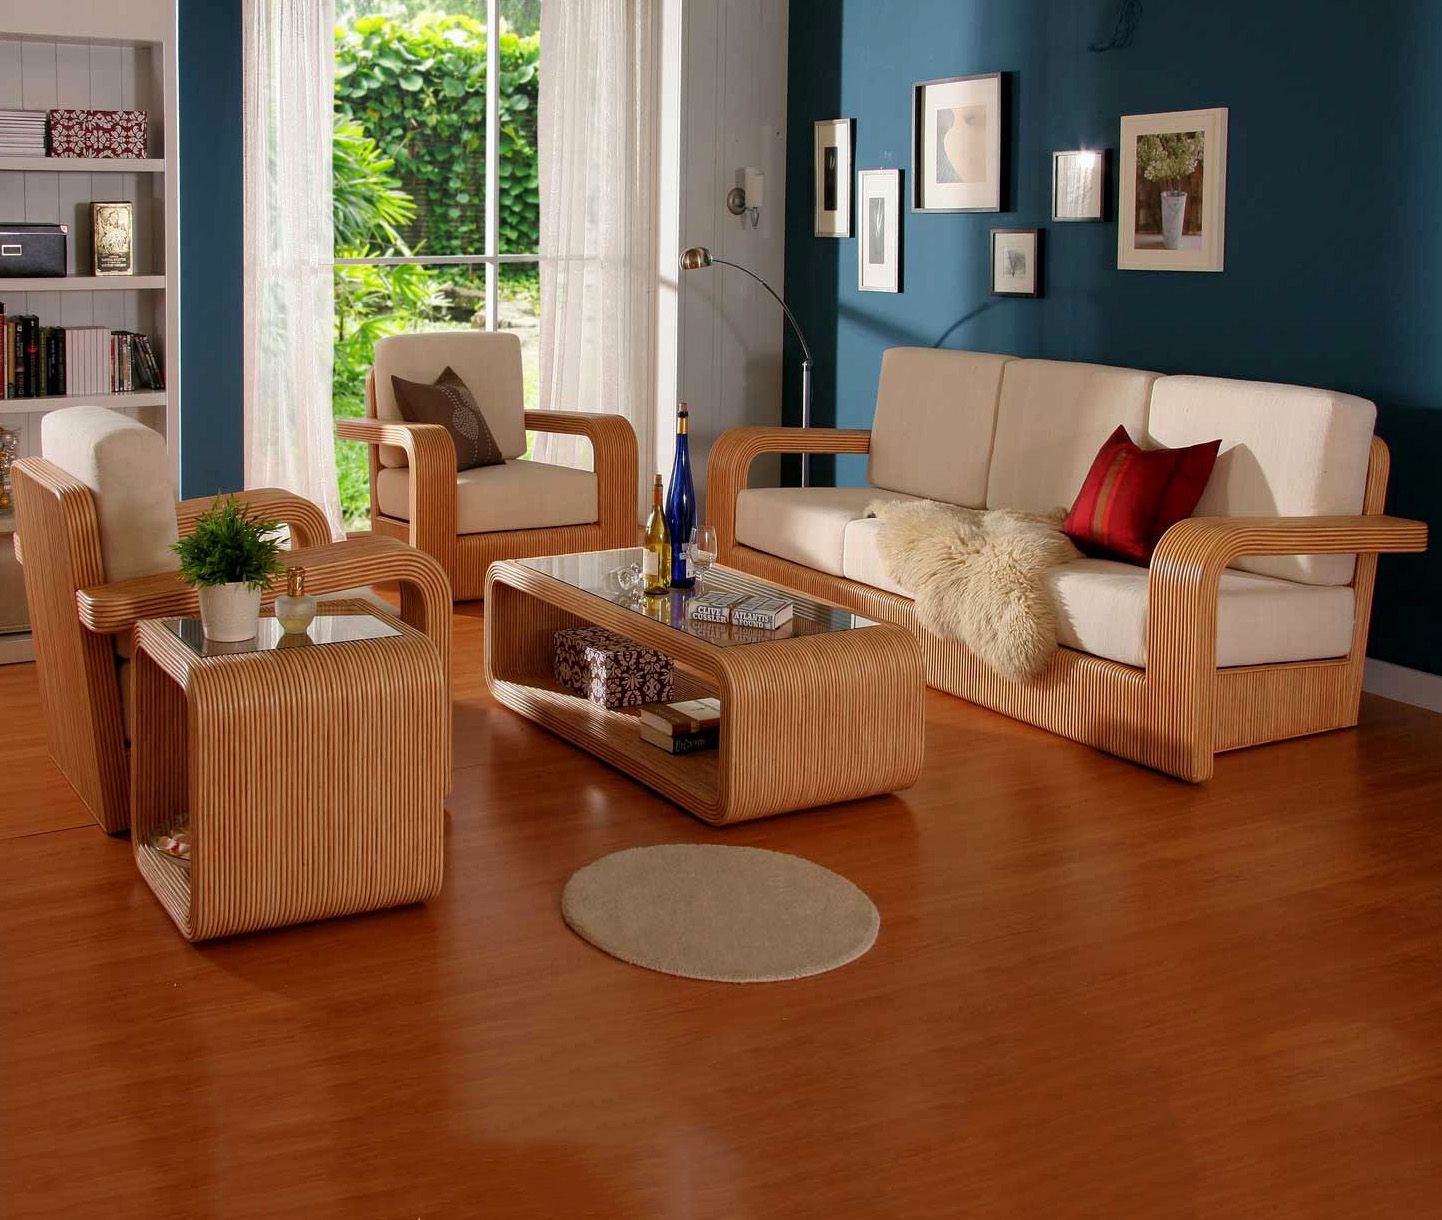 Nếu bạn đang tìm kiếm một chiếc bàn ghế gỗ phòng khách đơn giản nhưng vẫn đẹp mắt, đây chắc chắn là một sự lựa chọn hoàn hảo. Với chất liệu gỗ chắc chắn và màu sắc trang nhã, chiếc bàn ghế này sẽ tạo nên một phong cách tươi mới và dễ chịu cho không gian của bạn.